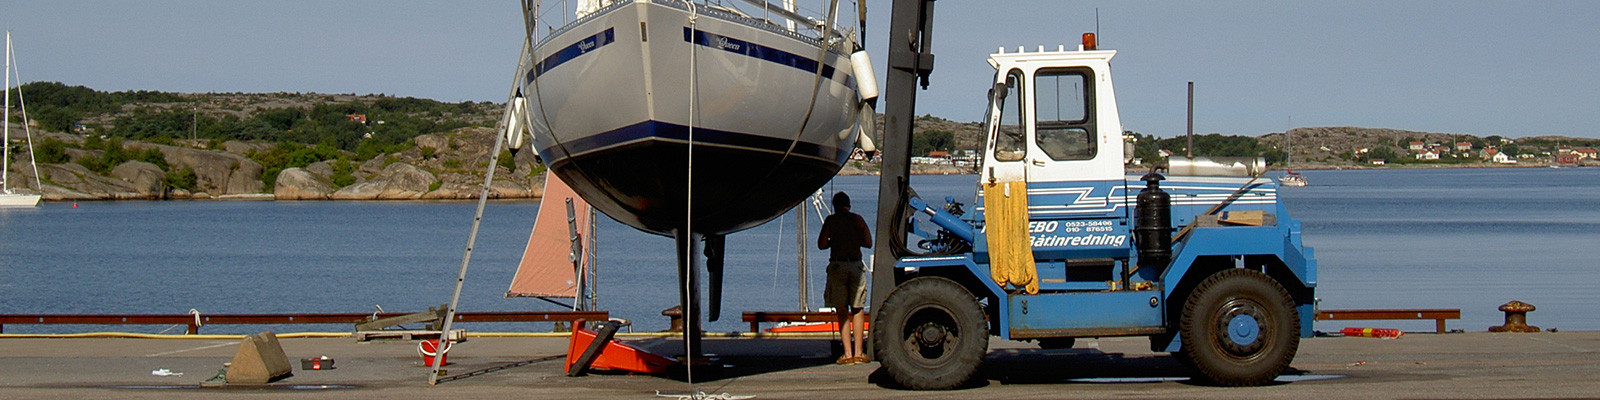 Vi erbjuder en helhetslösning med båtupptag, vinterförvaring och service